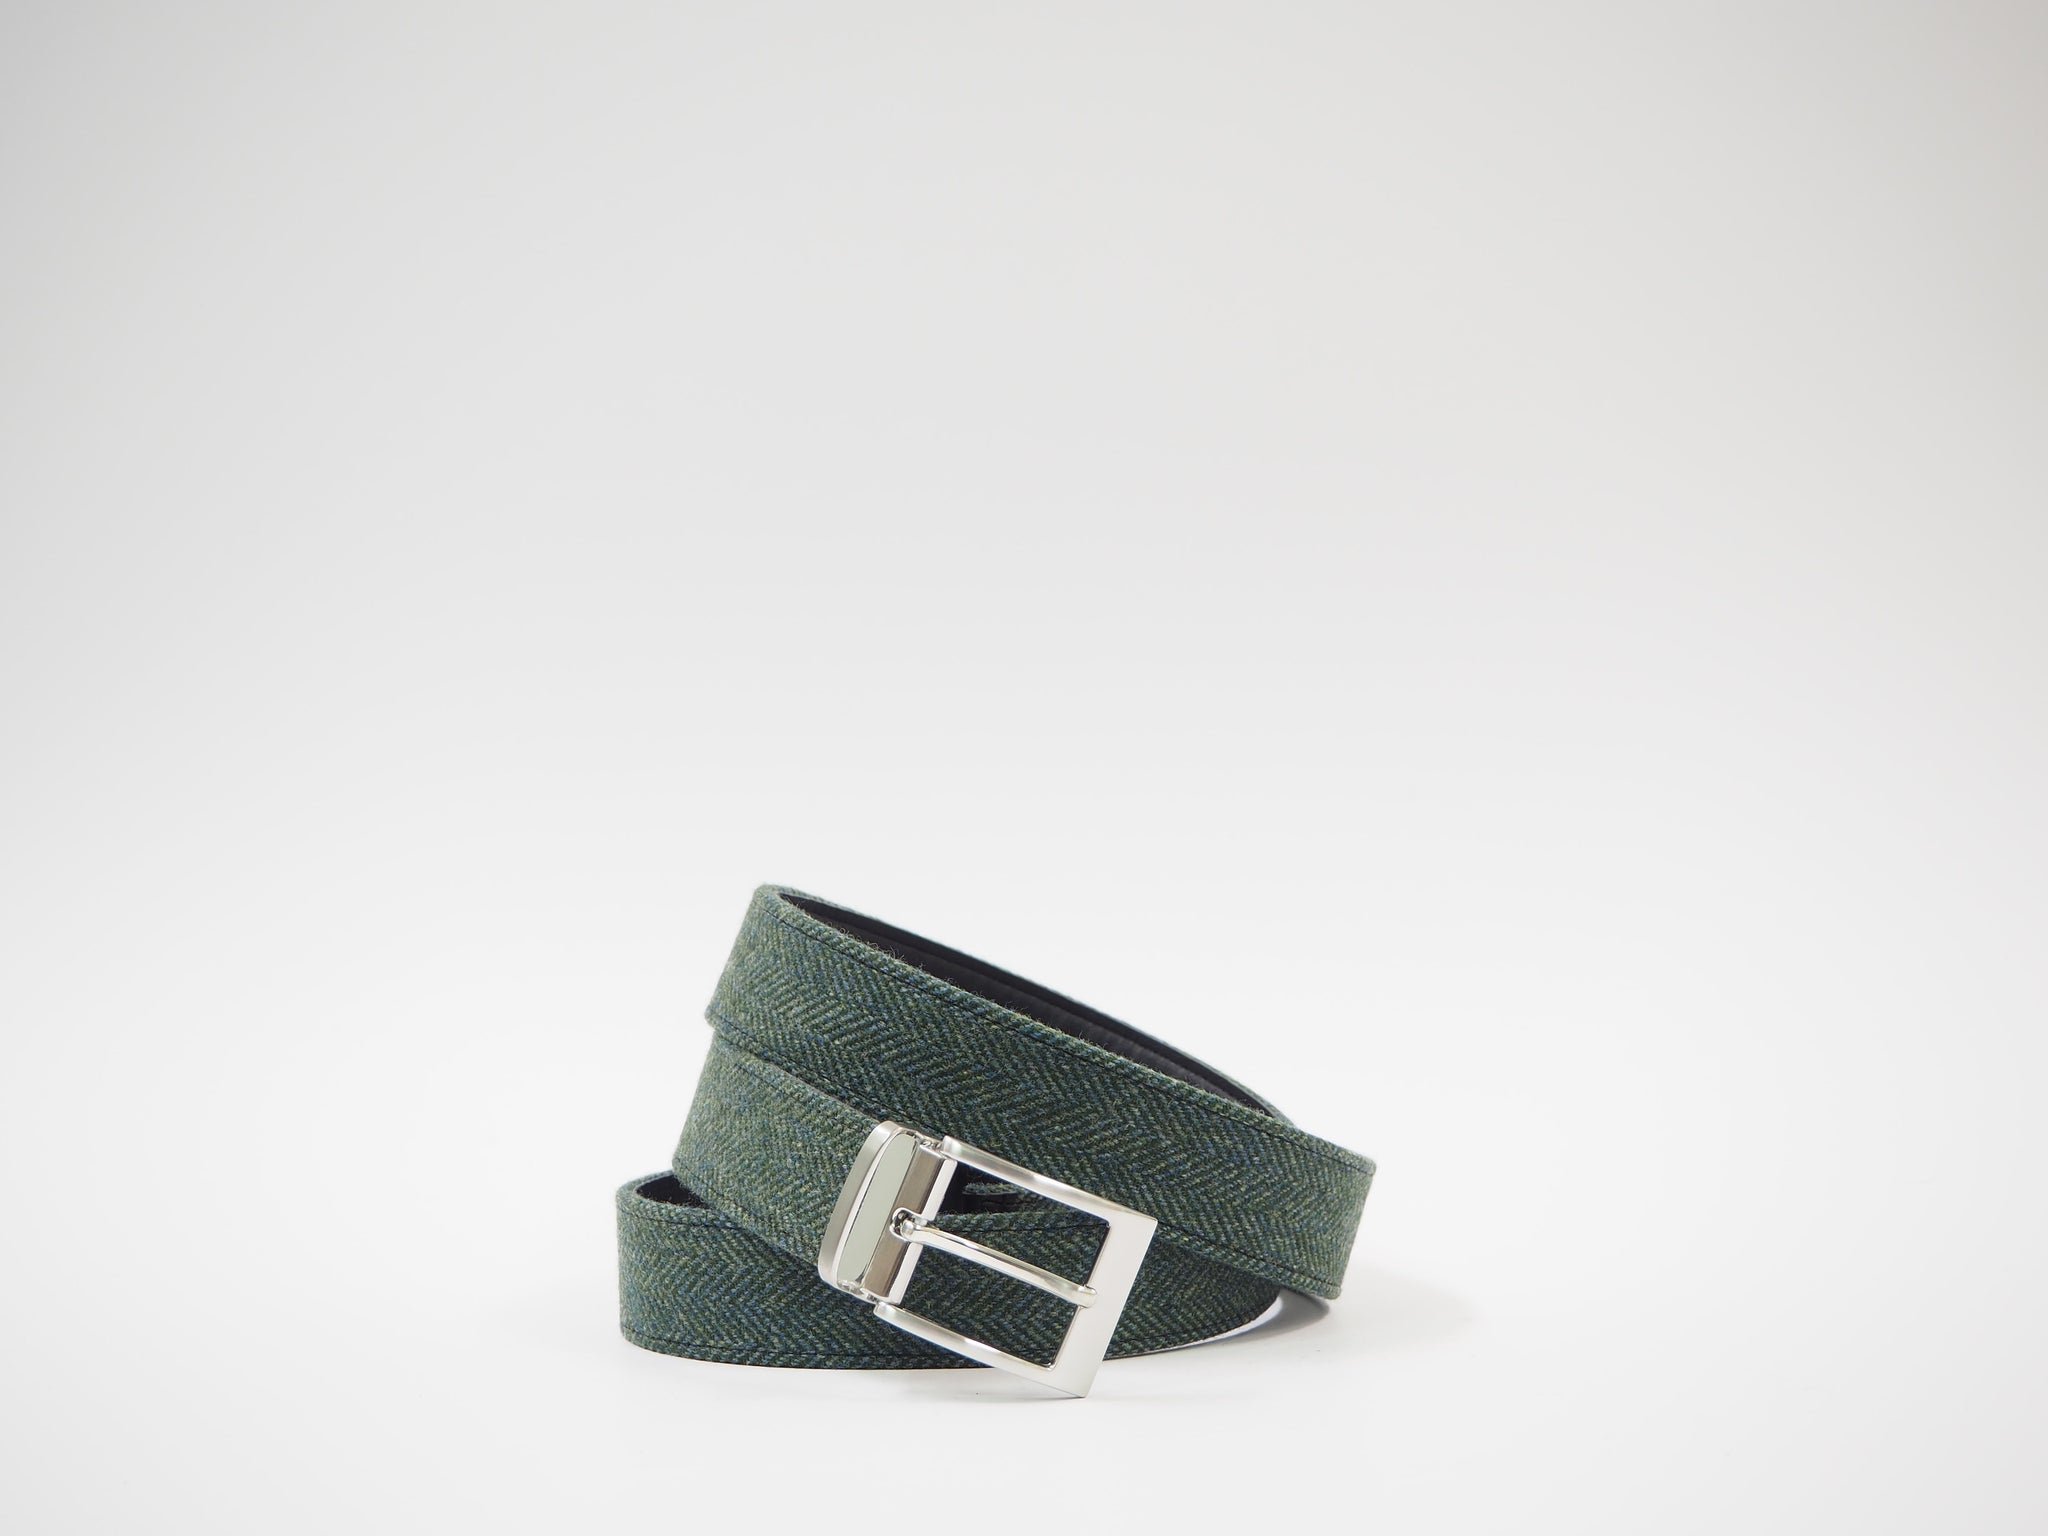 Size 43 - Turquoise & Green Herringbone Oxford + Belt